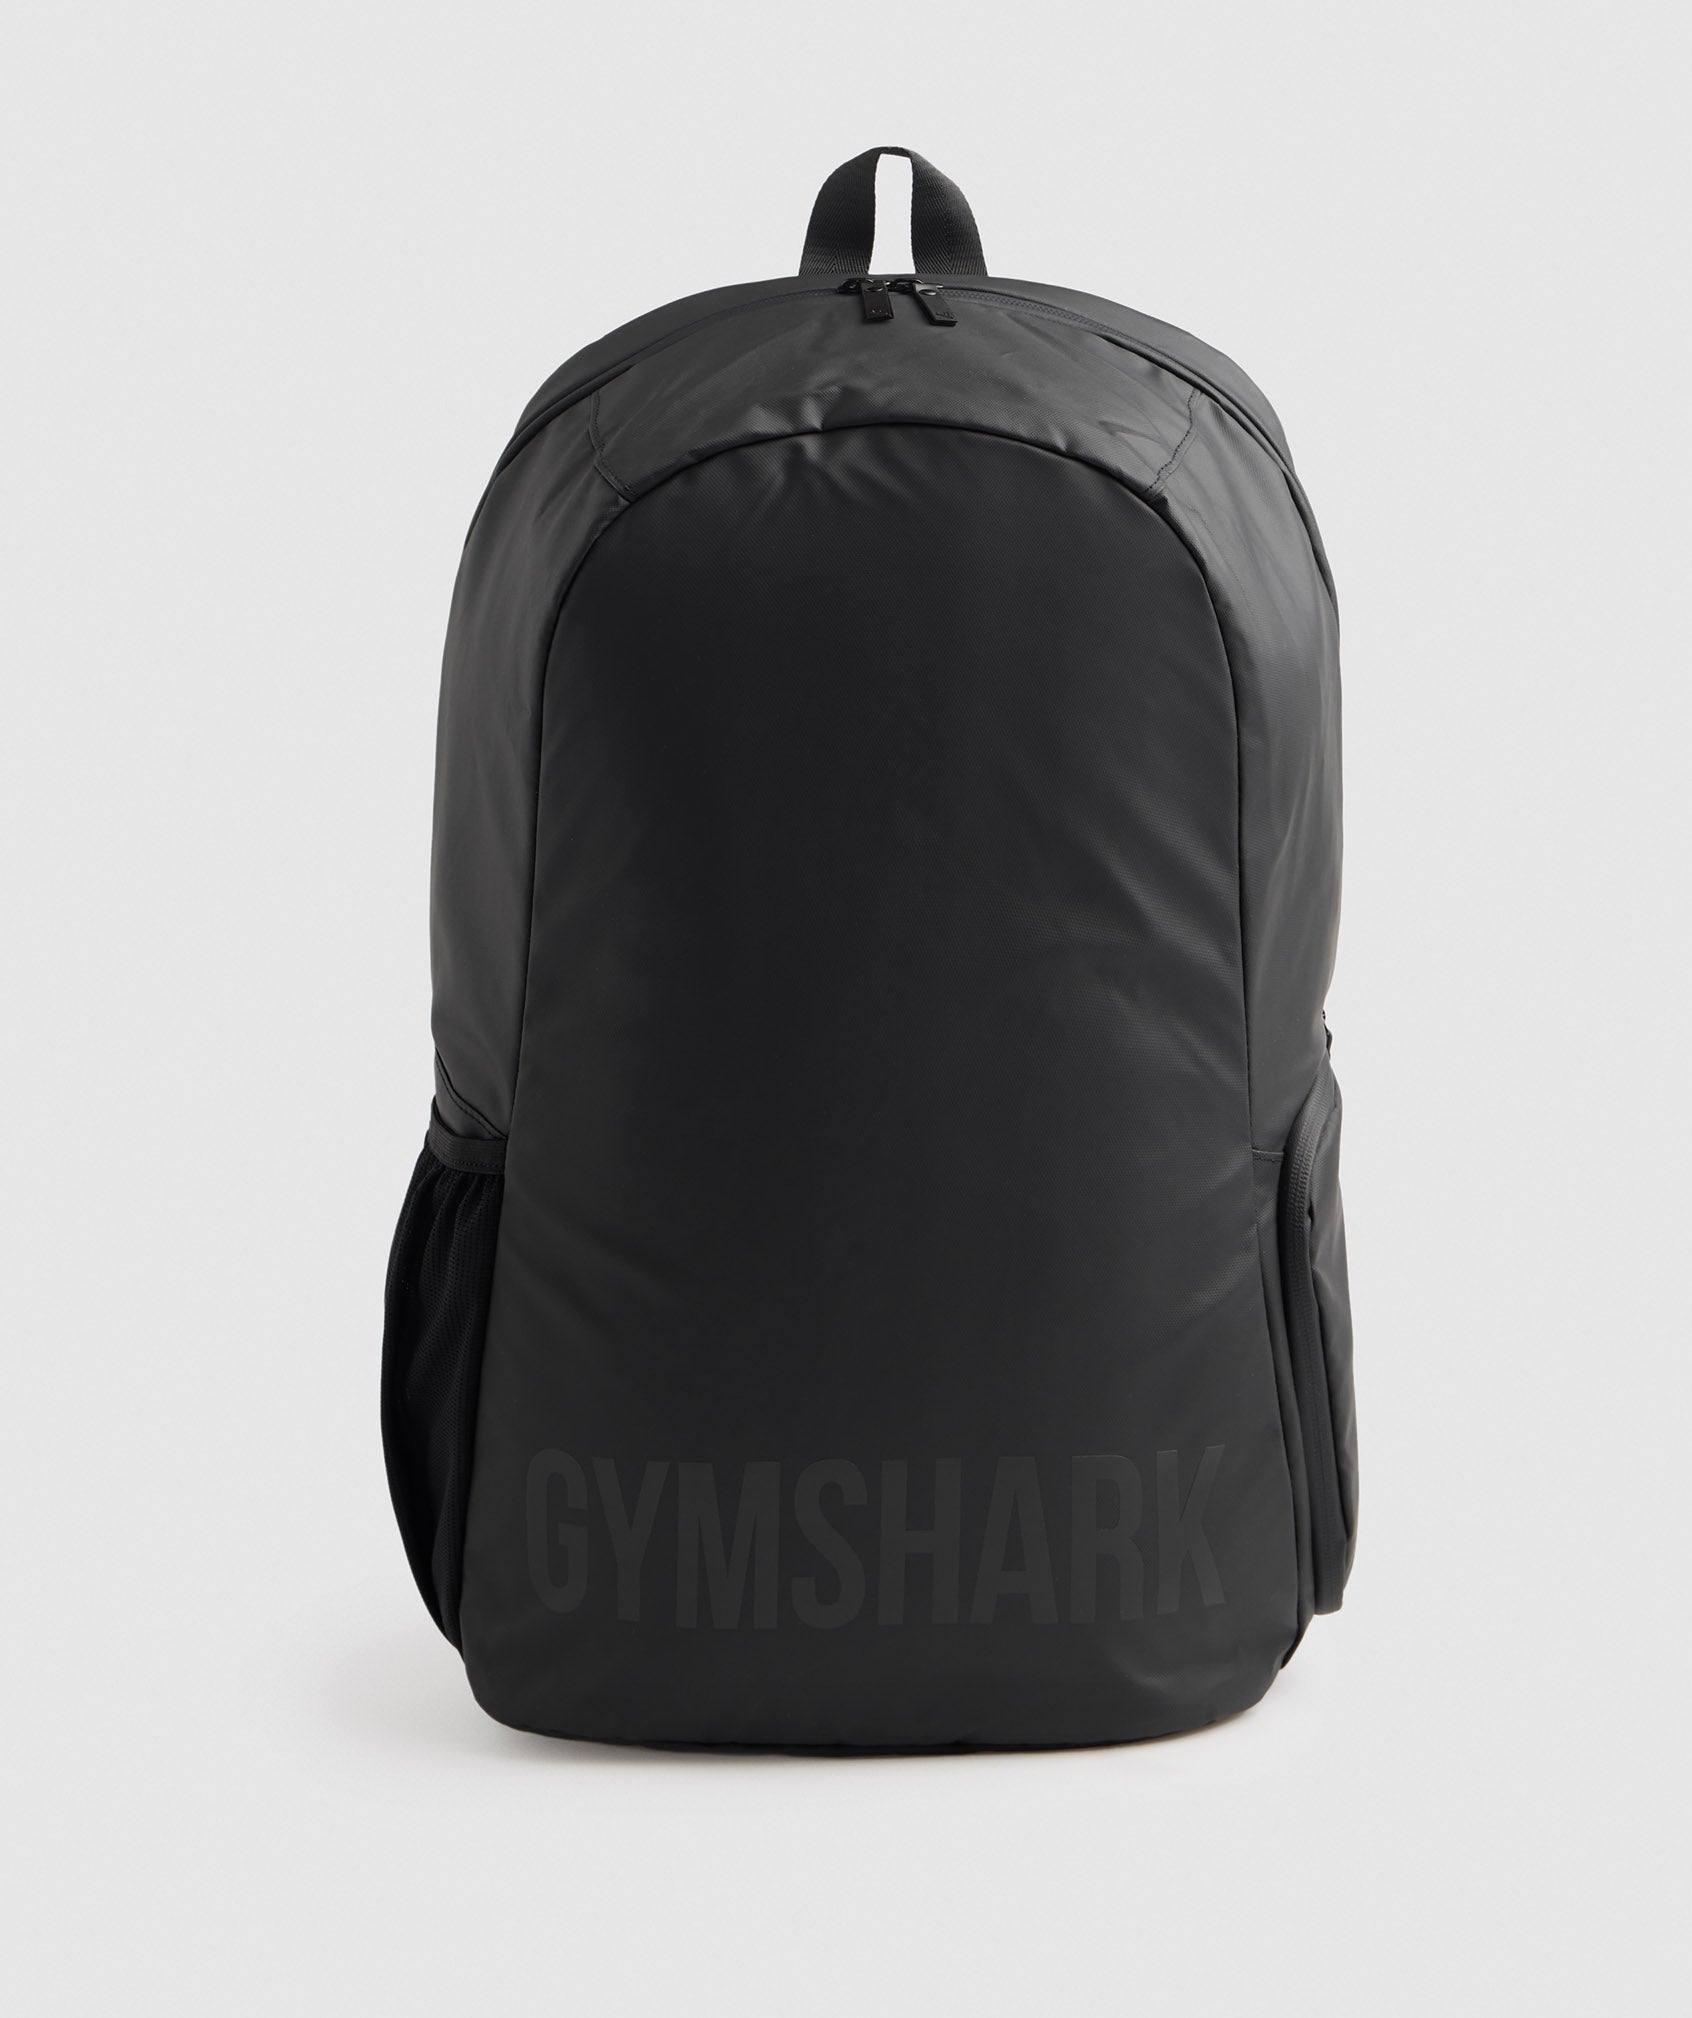 Gymshark Sleek Backpack Roll Top - Black